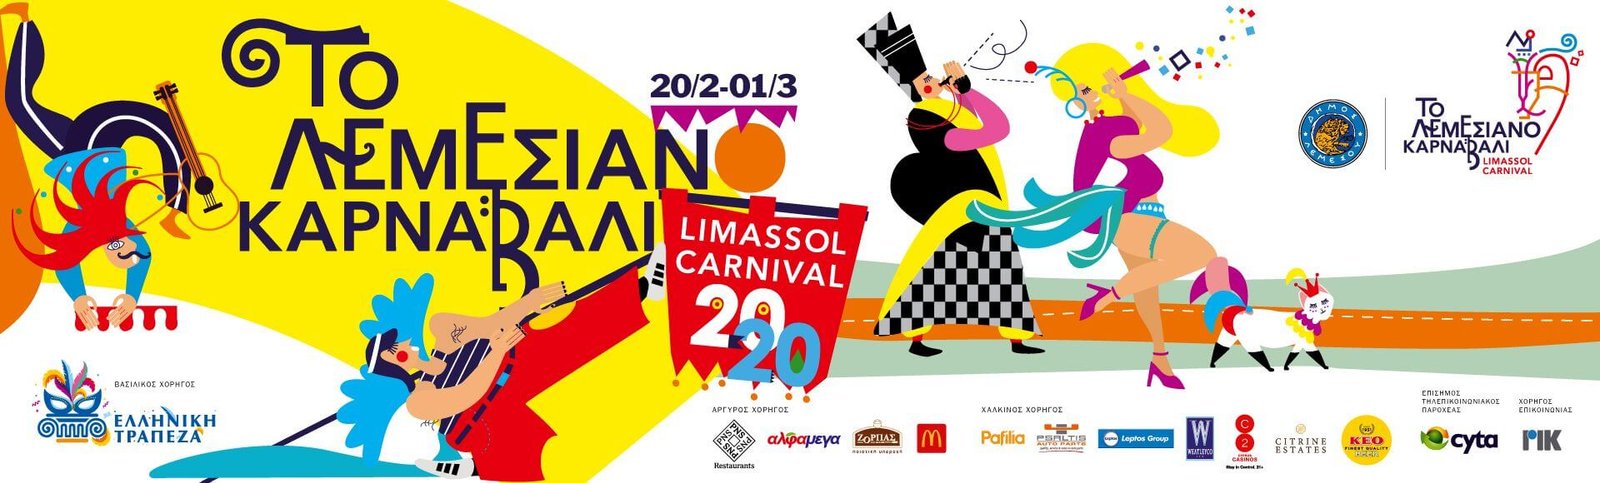 Карнавал 2020 в Лимассоле Кипр 17 февраля - 1 марта